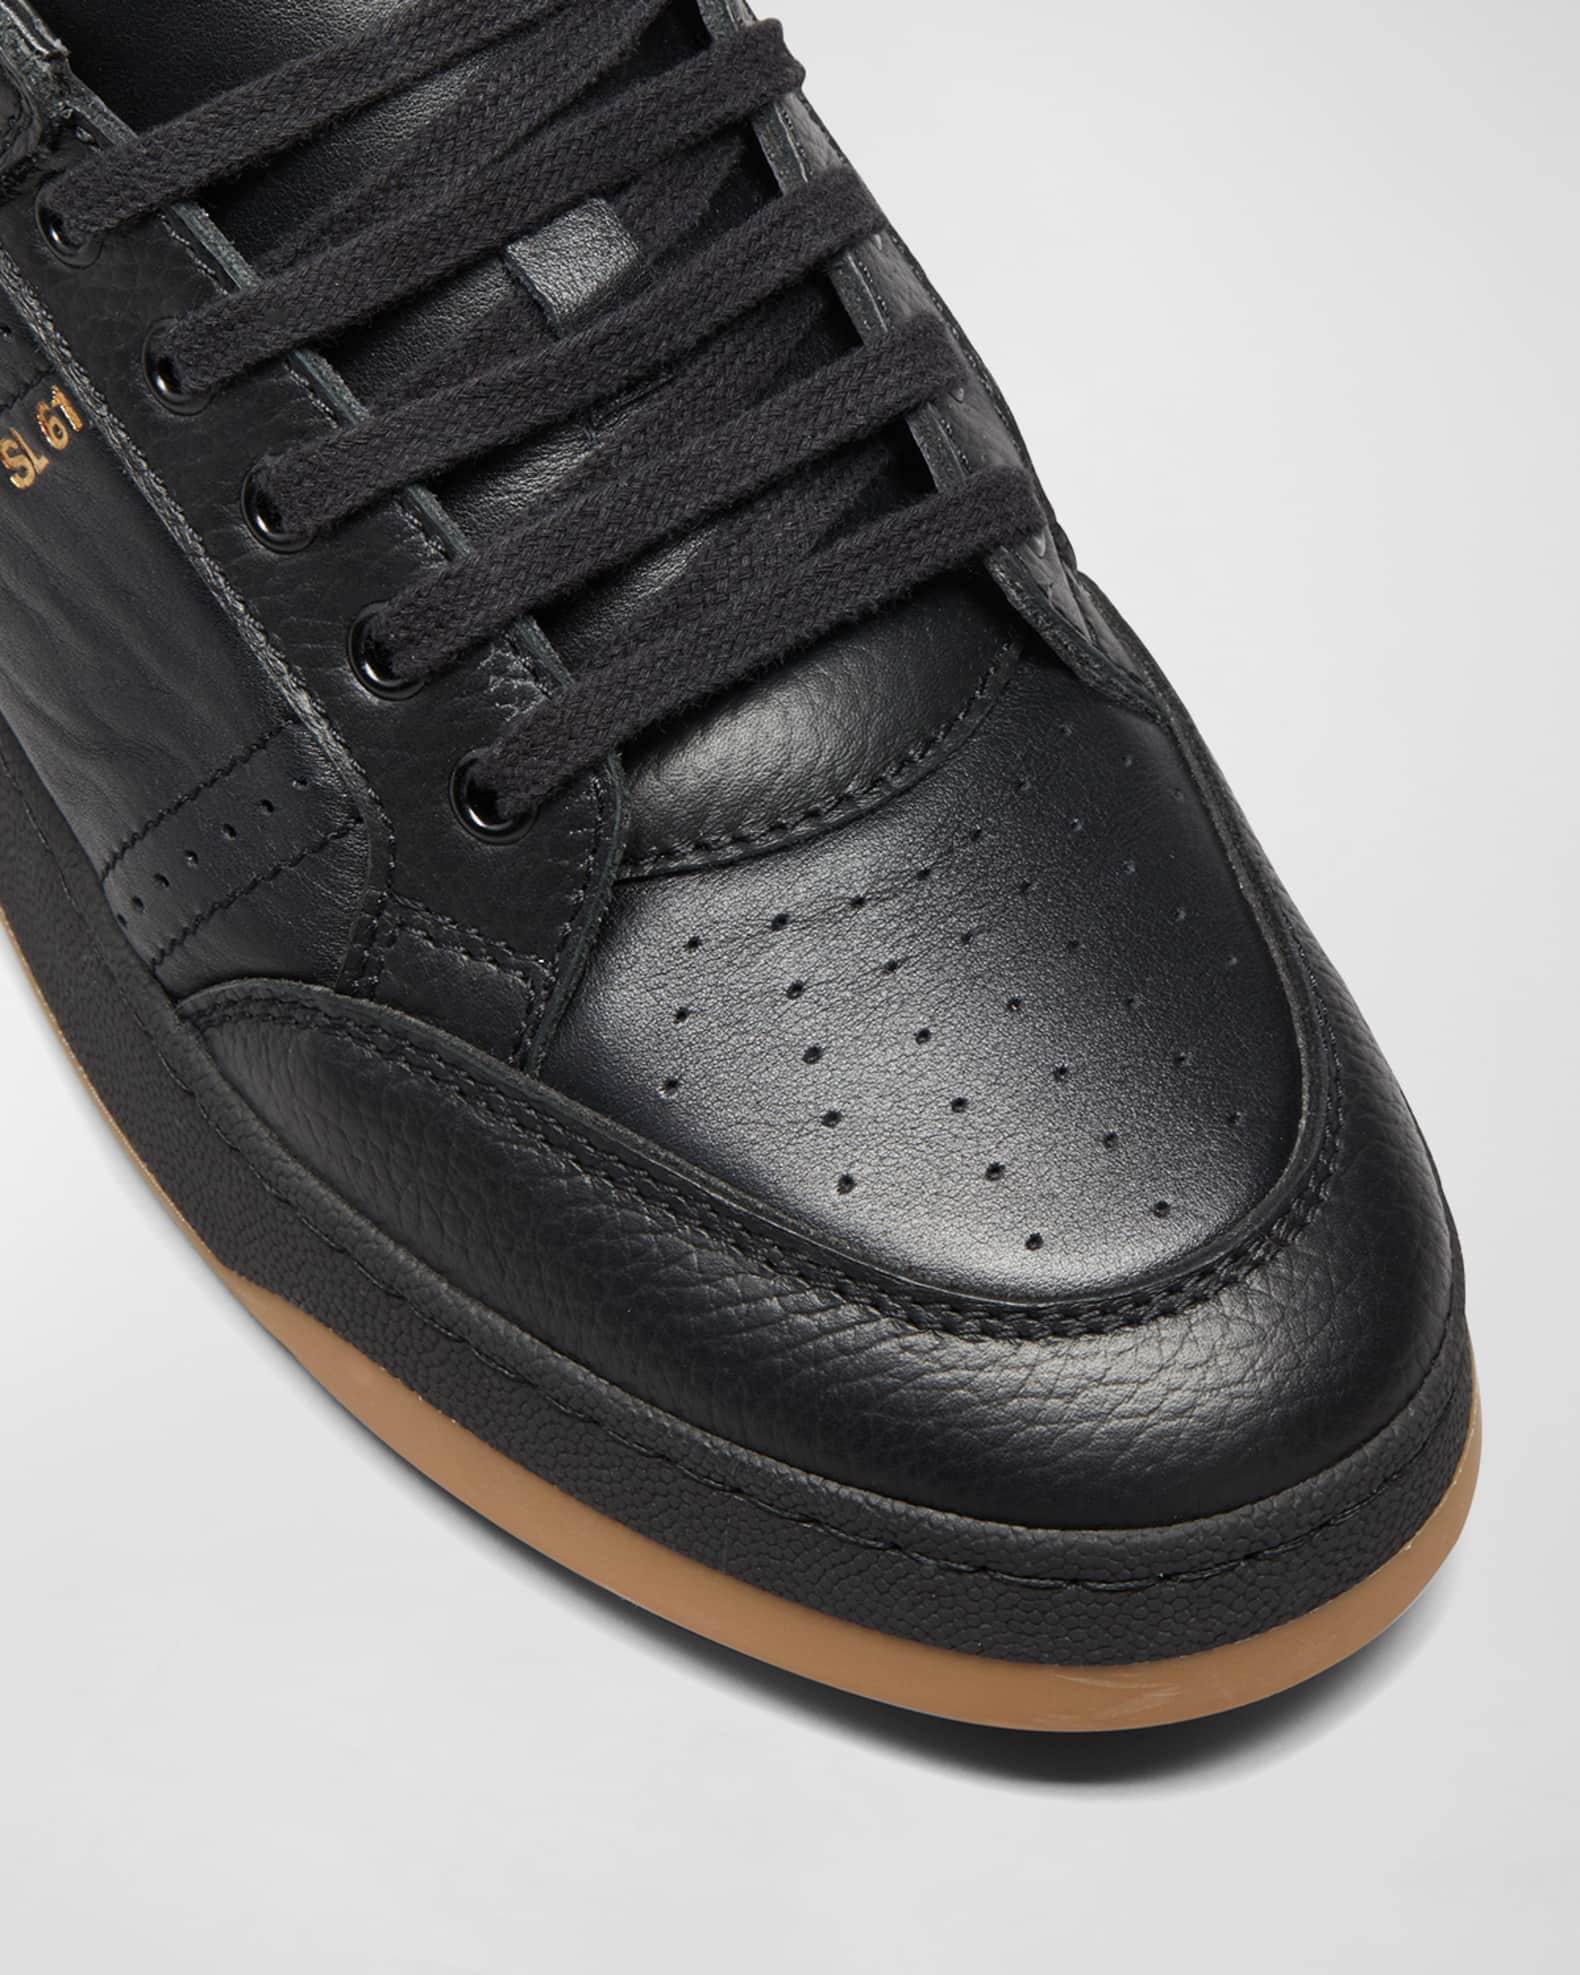 Saint Laurent Men's SL/61 Low-Top Leather Sneakers | Neiman Marcus